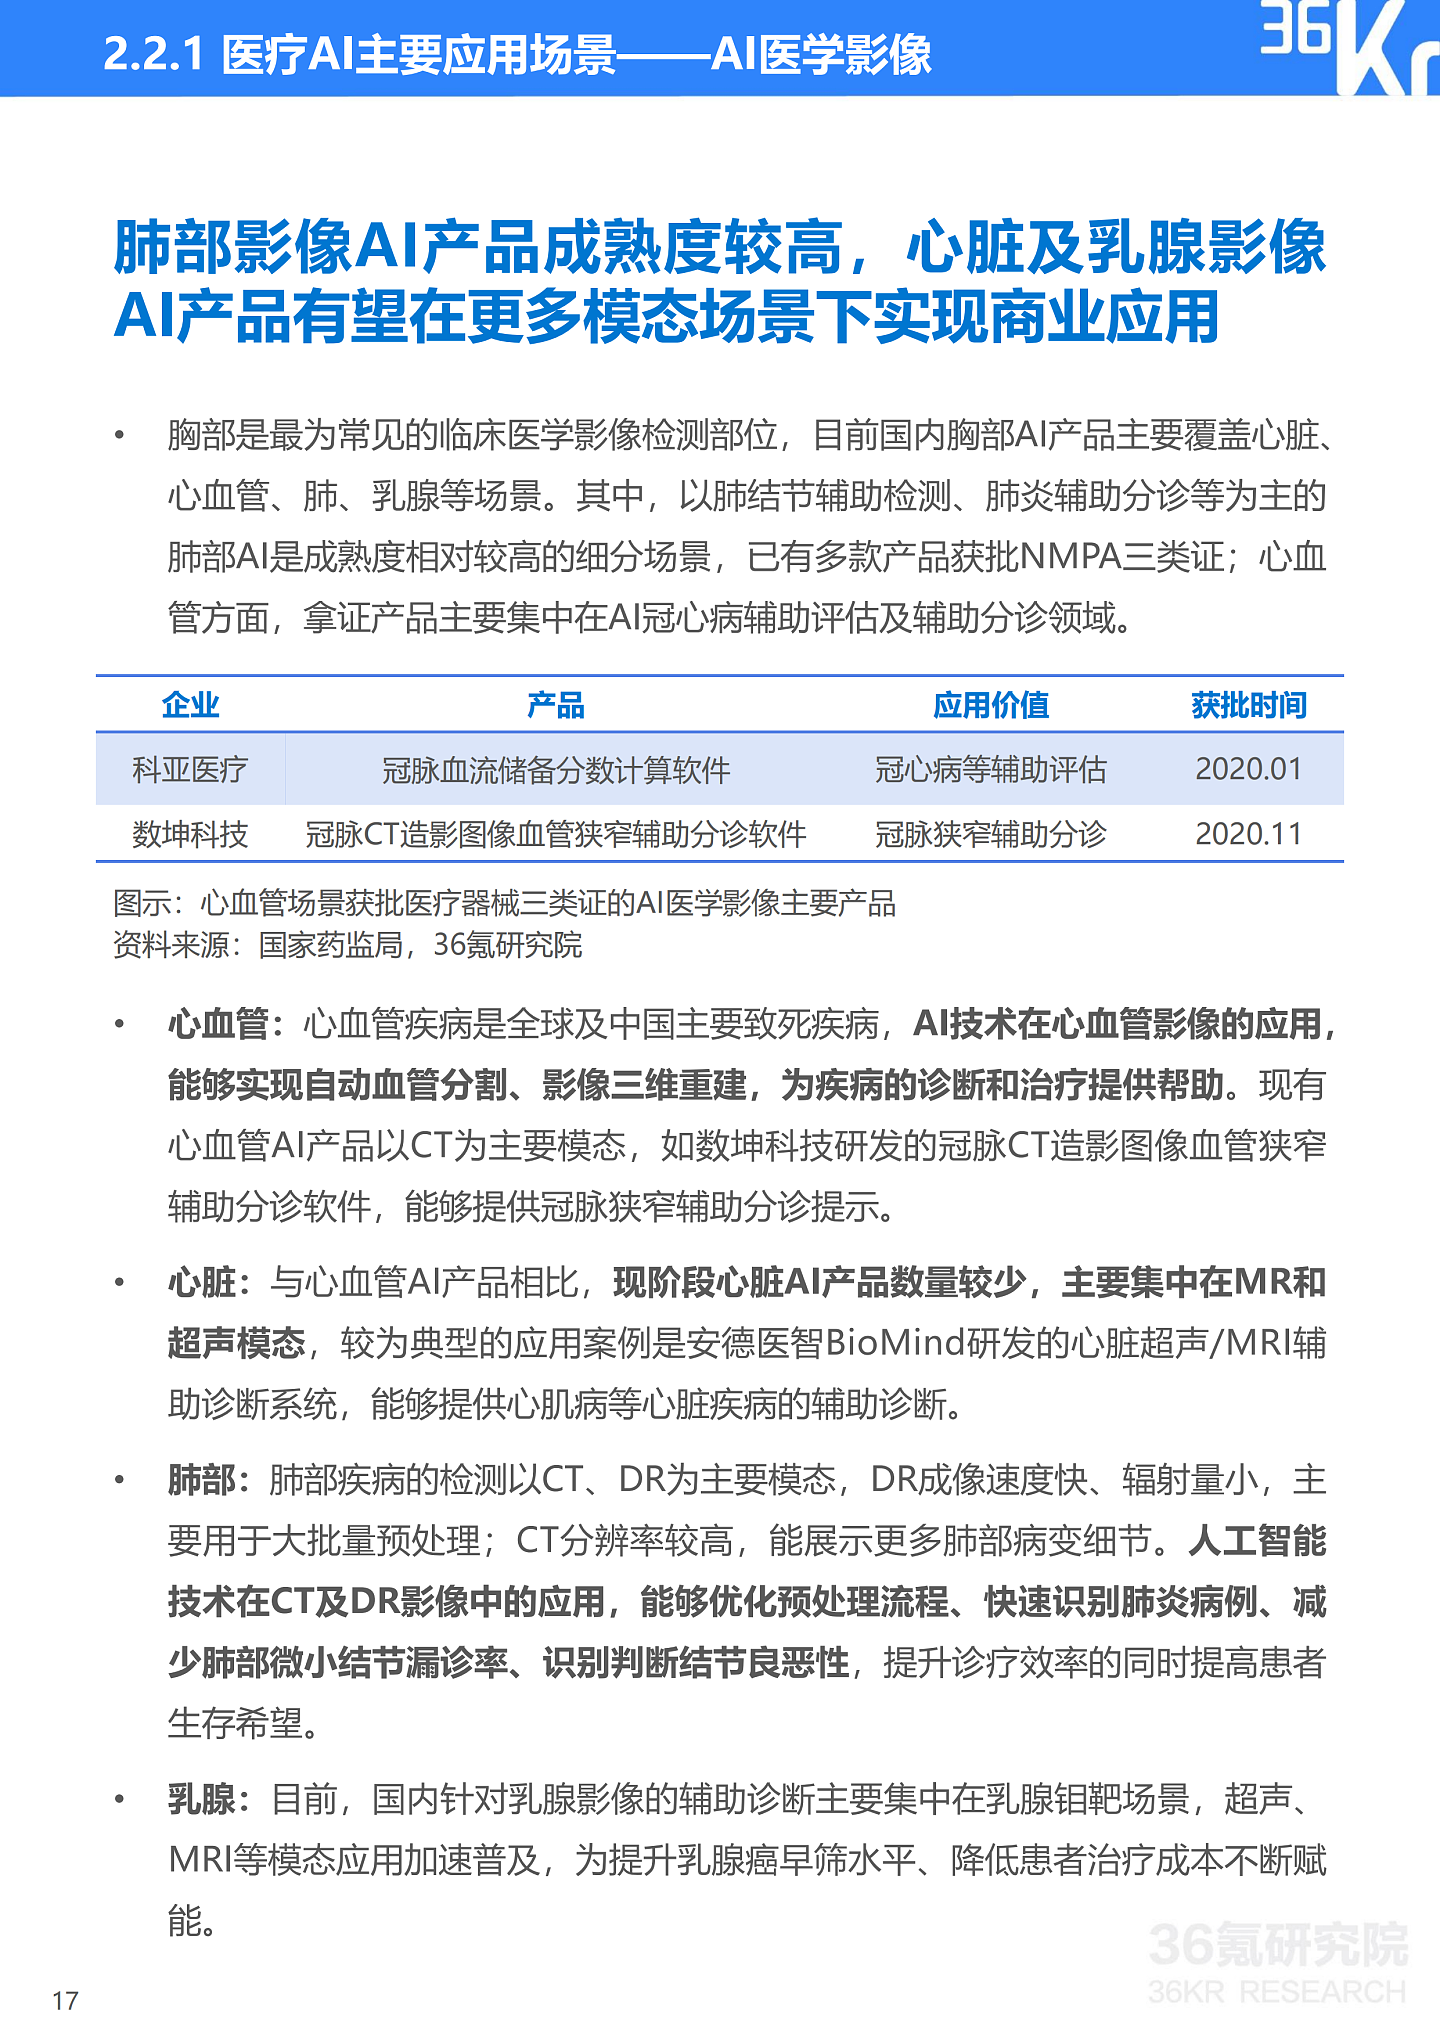 36氪研究院 | 2021年中国医疗AI行业研究报告 - 20